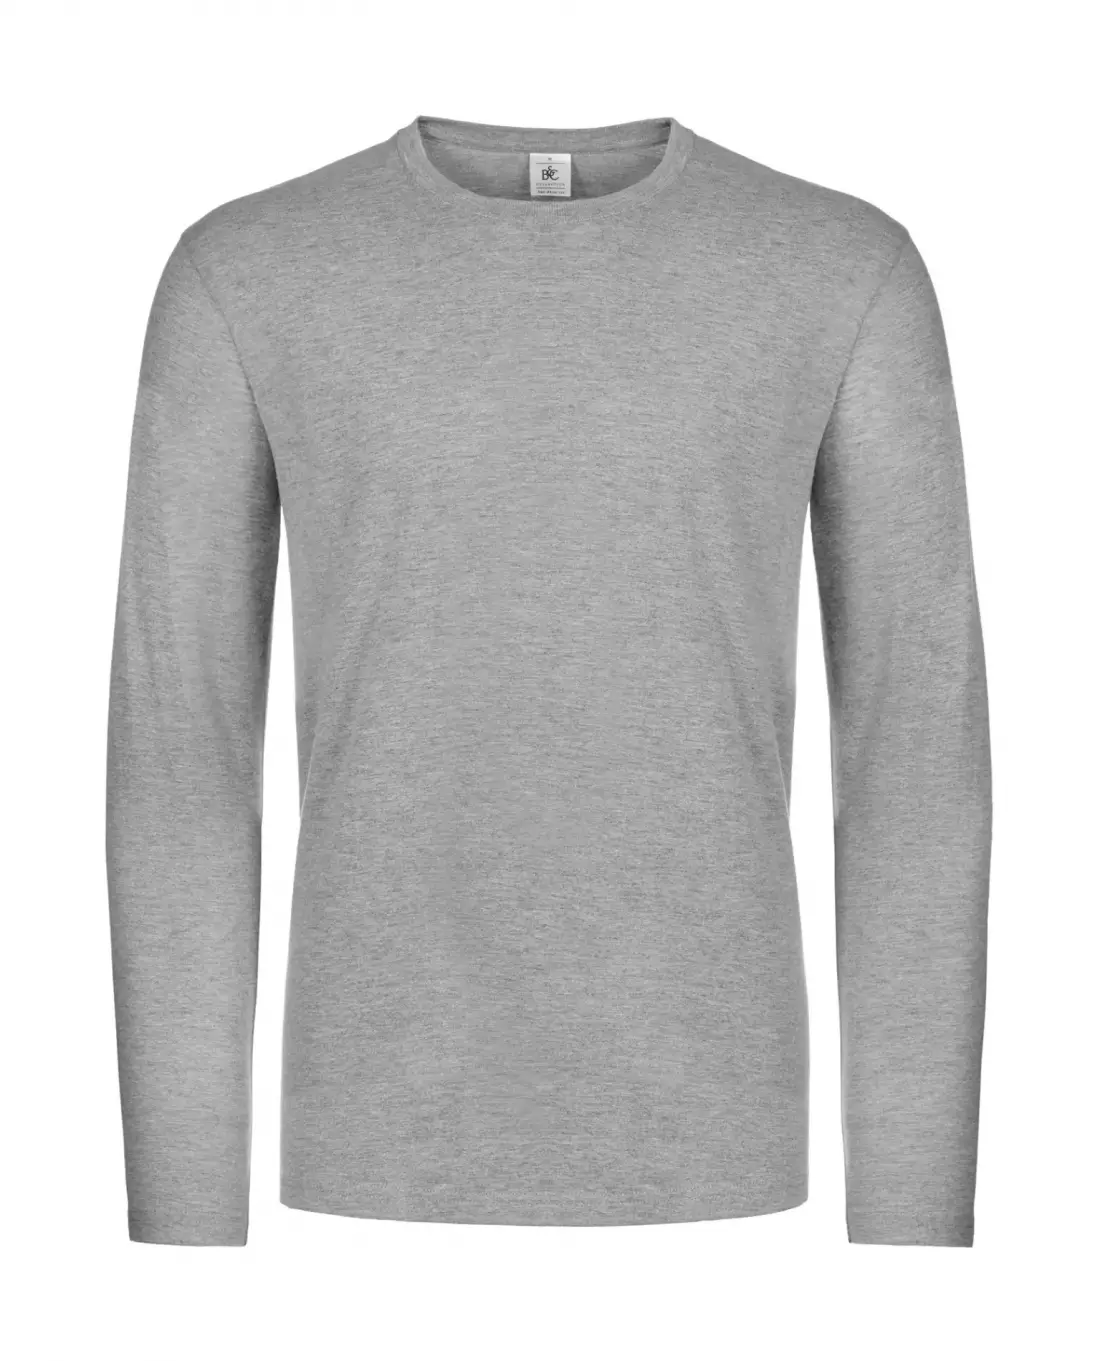 B&C Miesten pitkähihainen paita #E190, Sport Grey